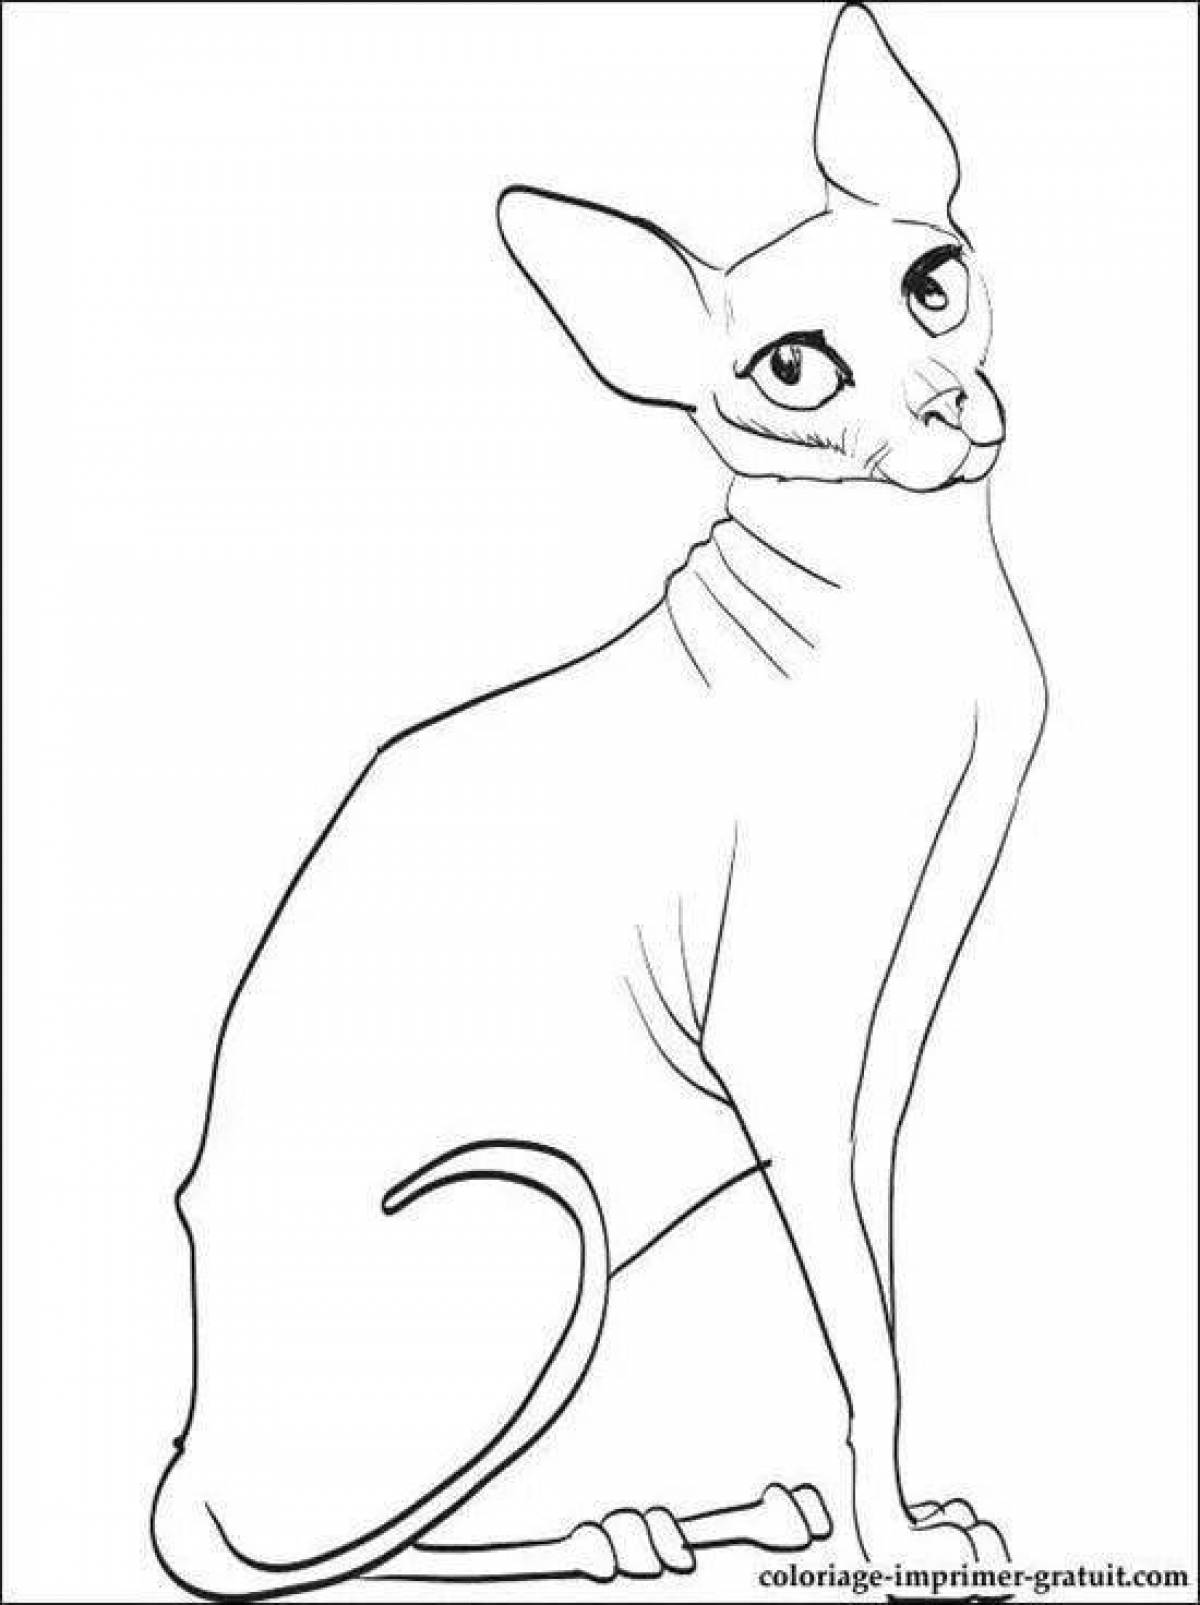 Coloring elegant sphinx cat